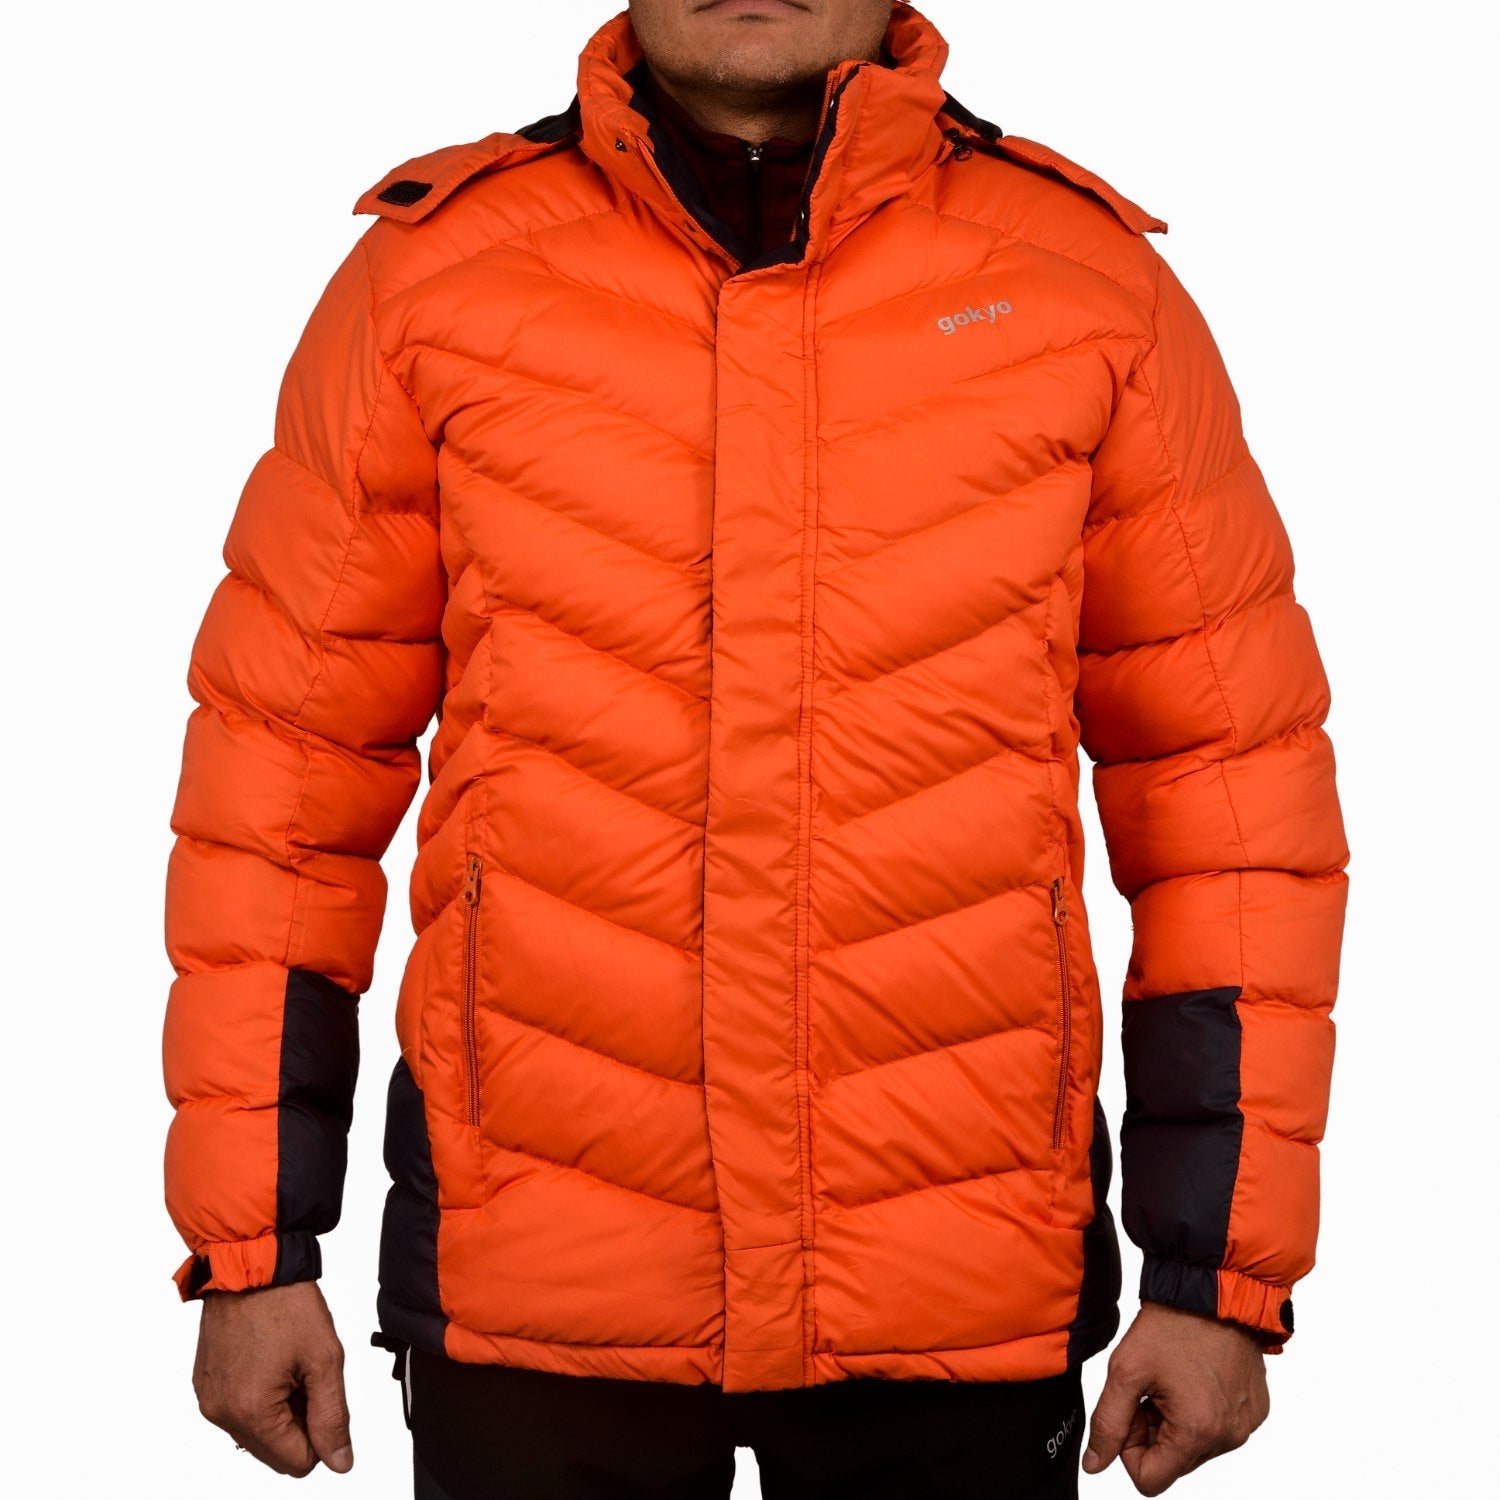 Buy K2 Survivor Down Jacket Orange at Gokyo Outdoor Clothing & Gear